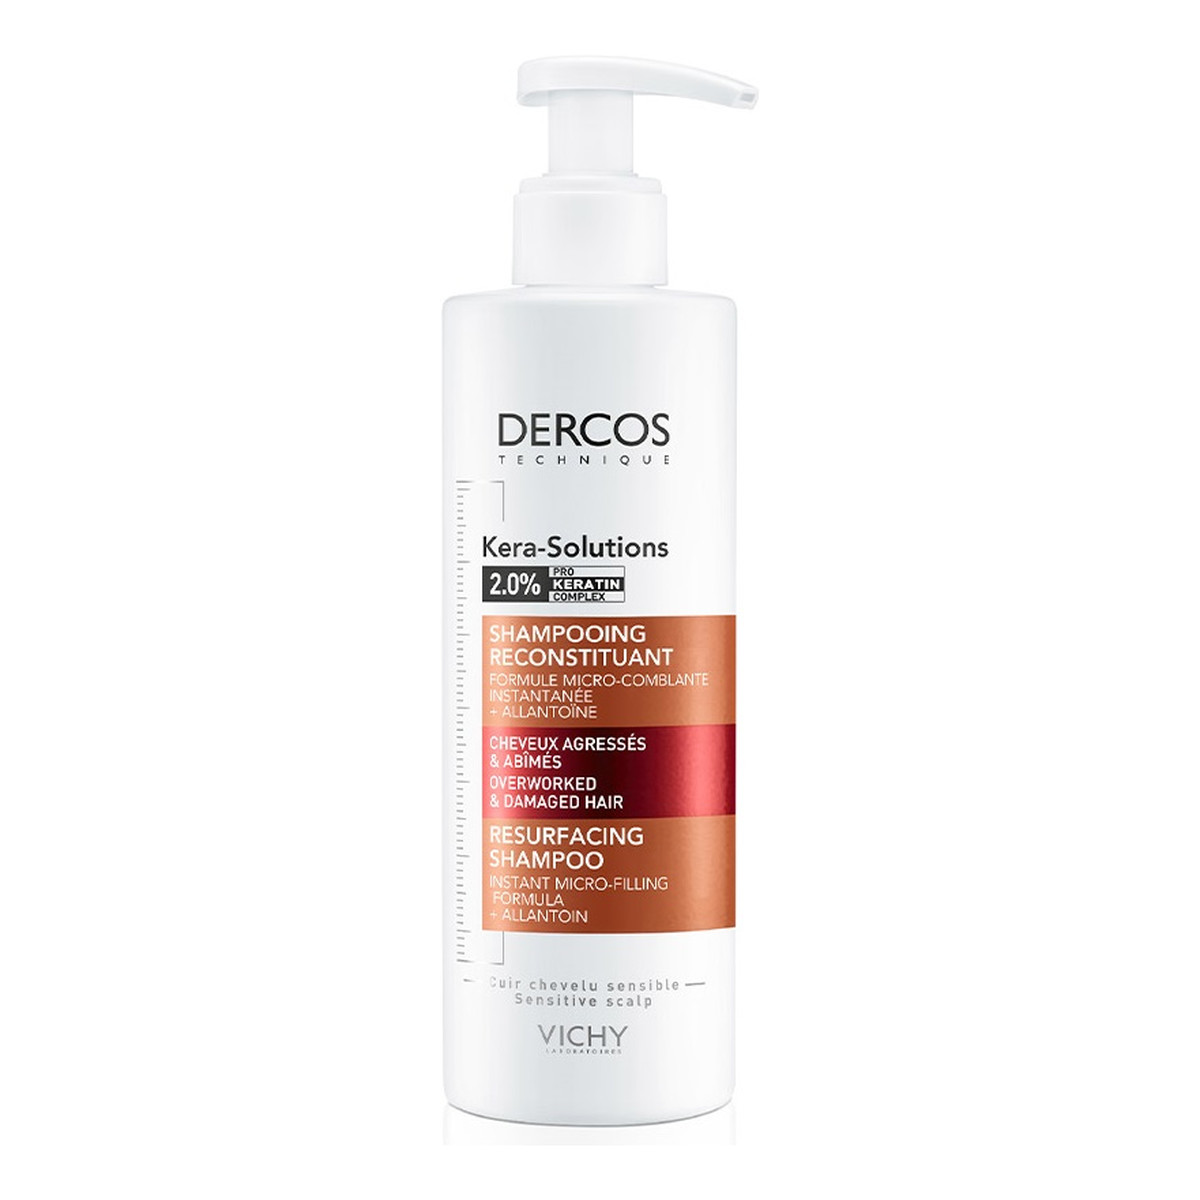 Vichy Dercos kera-solutions repairing shampoo szampon regenerujący do włosów suchych i zniszczonych 250ml